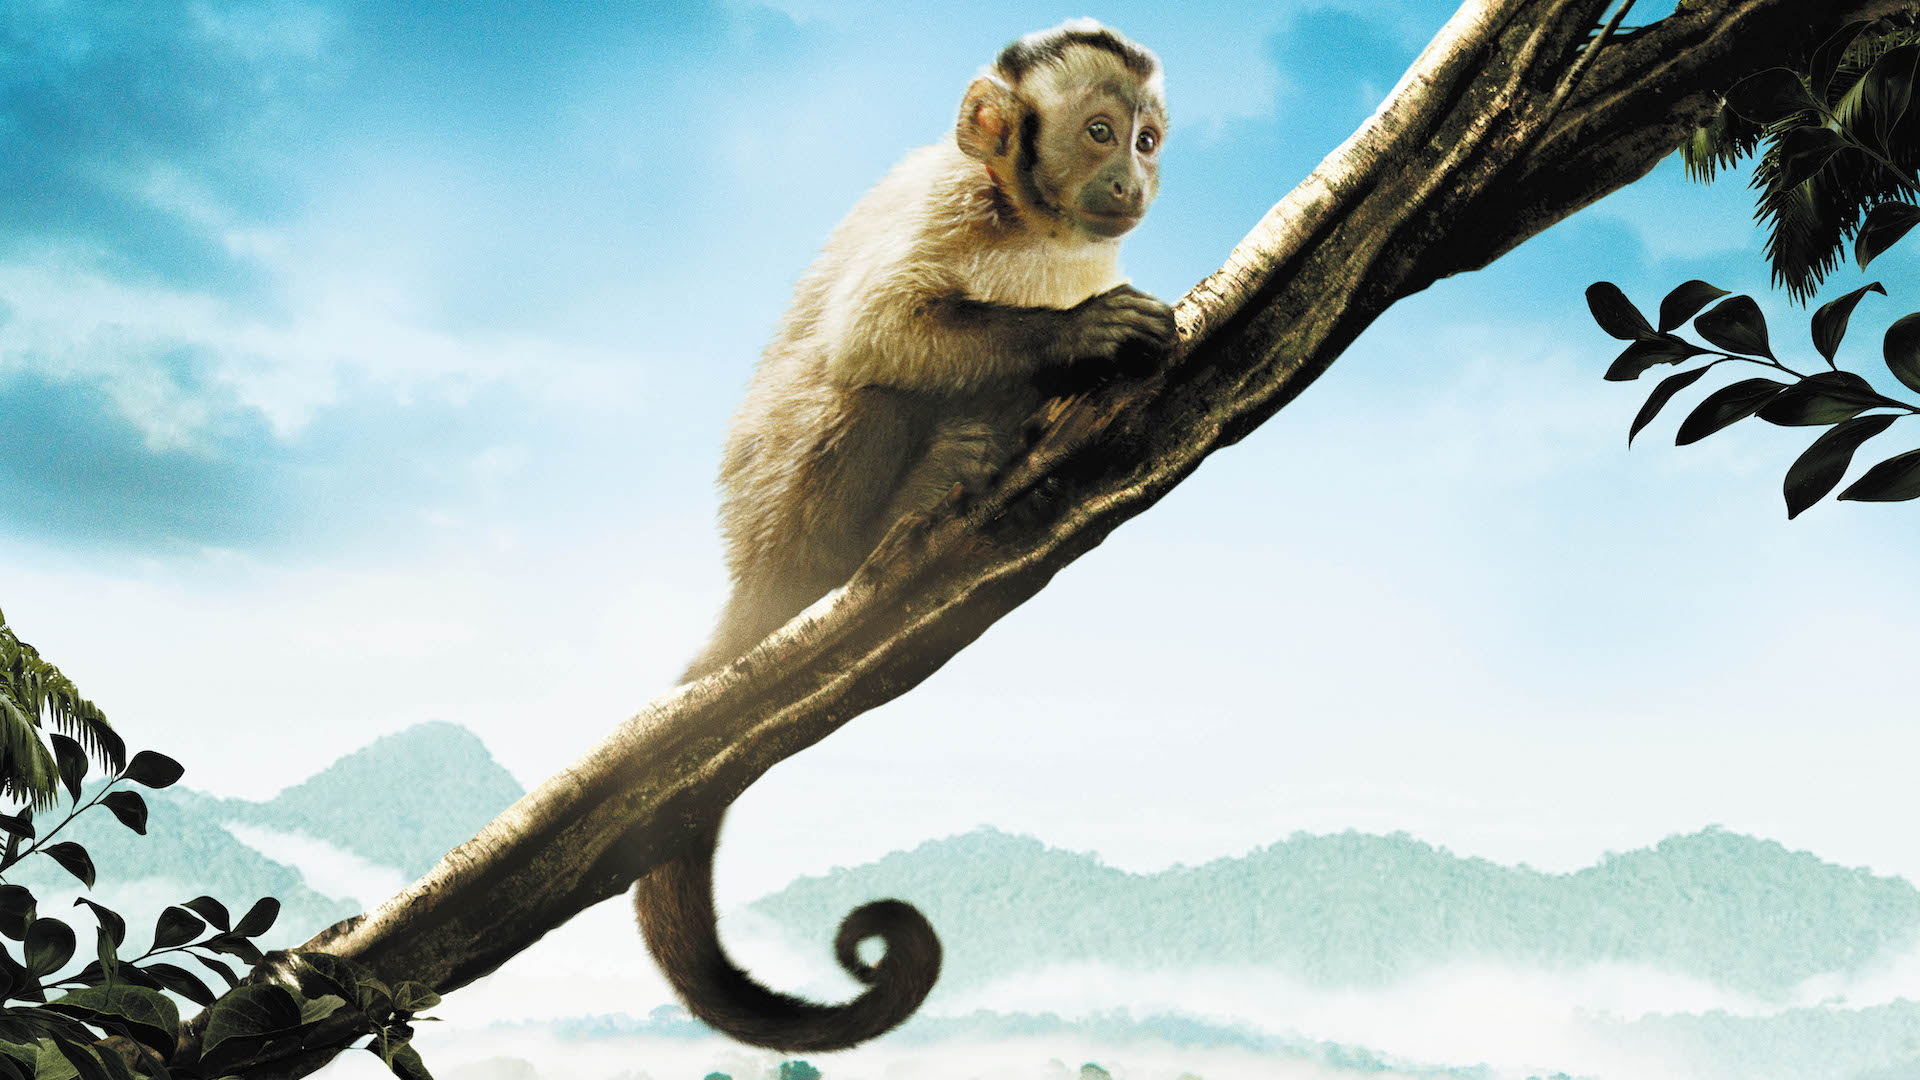 małpka kapucynka siedząca na gałęzi drzewa bohaterka filmu dokumentalnego Amazonia w reżyserii Thierry’ego Ragoberta